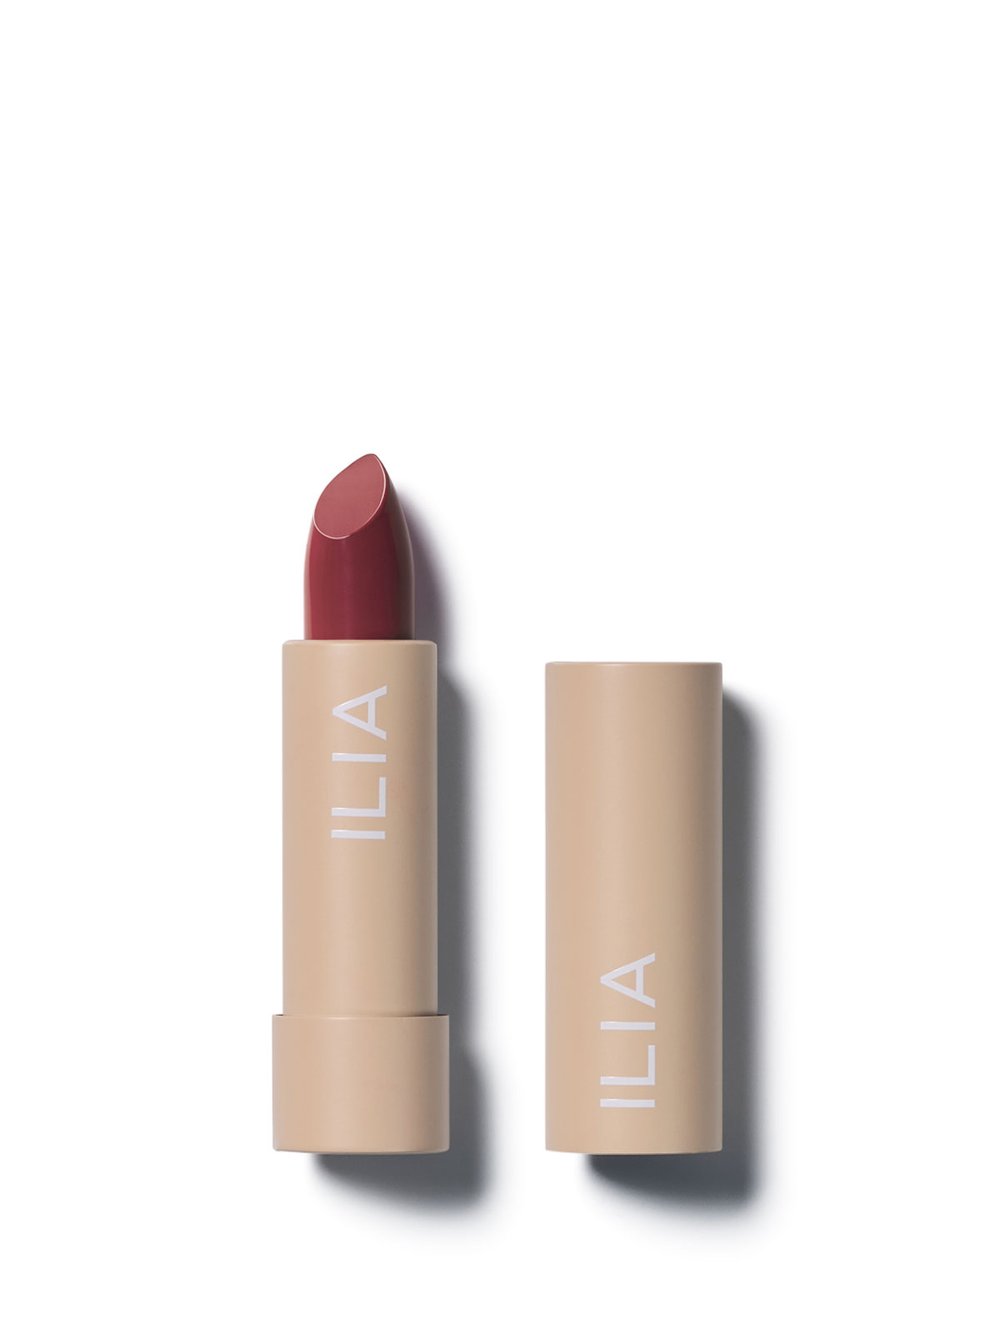 ILIA Color Block Lipstick